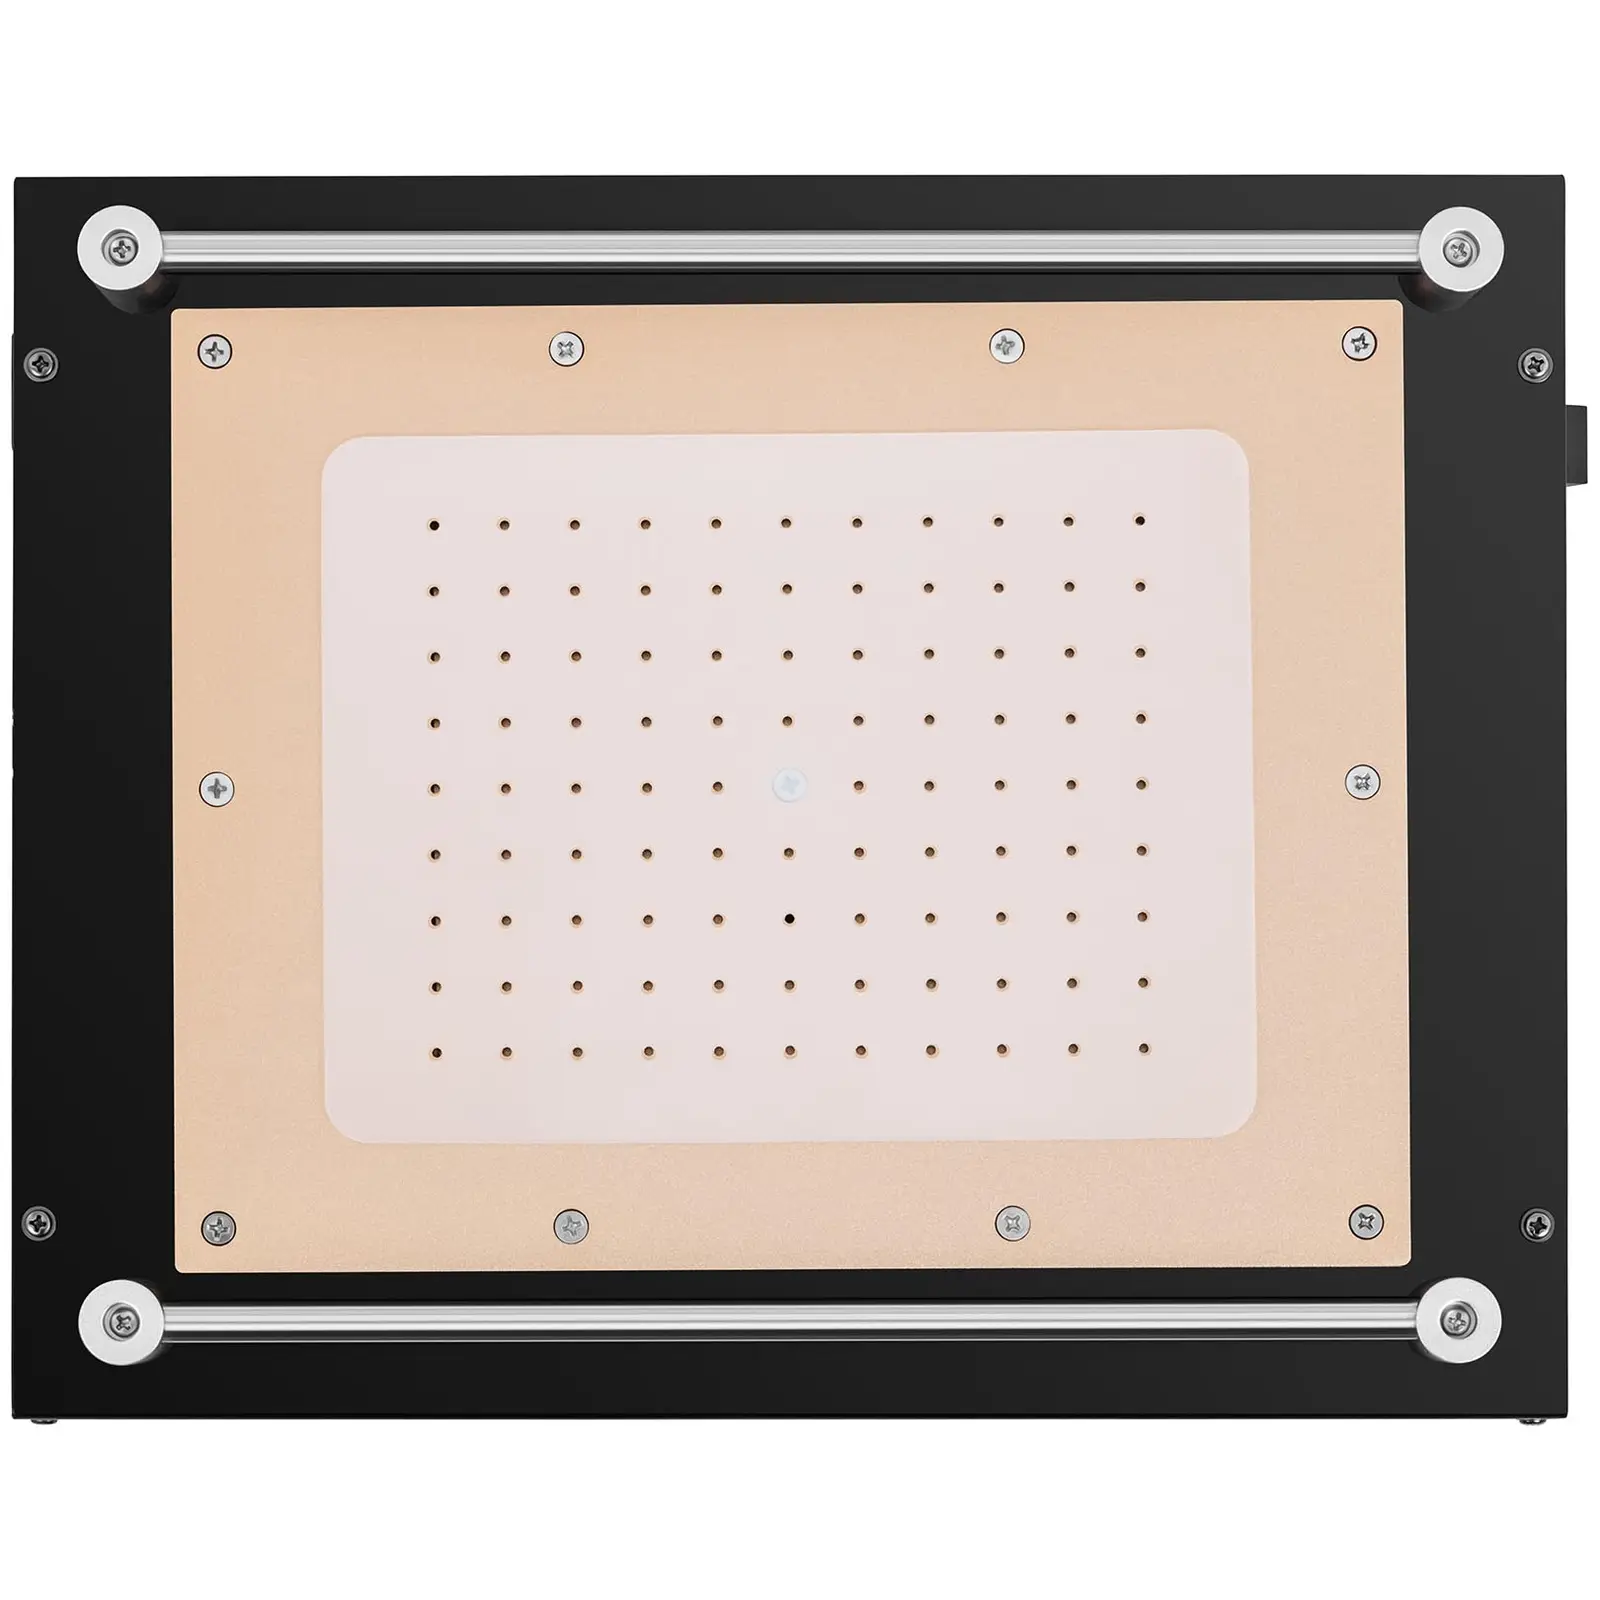 Separator LCD - naprawa wyświetlaczy smartfonów/tabletów - 12"